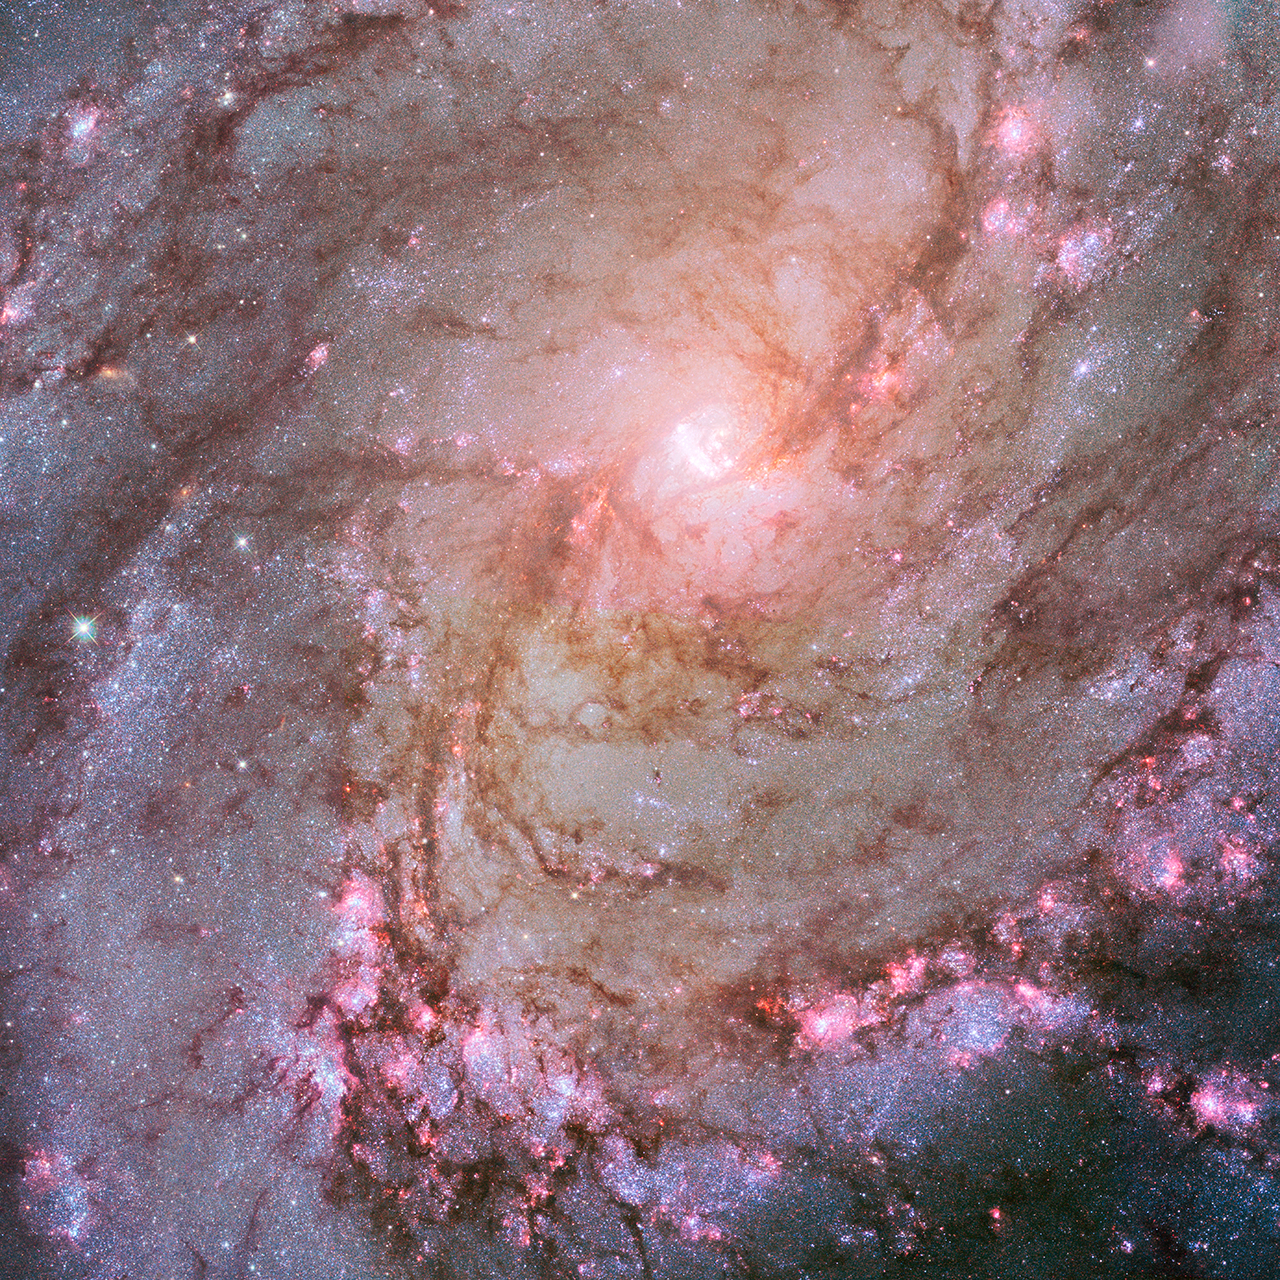 Zdjęcie niedalekiej galaktyki Messier 83 (M83) wykonane Komicznym Teleskopem Hubble’a. Źródło: NASA, ESA, and Z. Levay (STScI/AURA) Acknowledgment: NASA, ESA, and R. Khan (GSFC and ORAU)